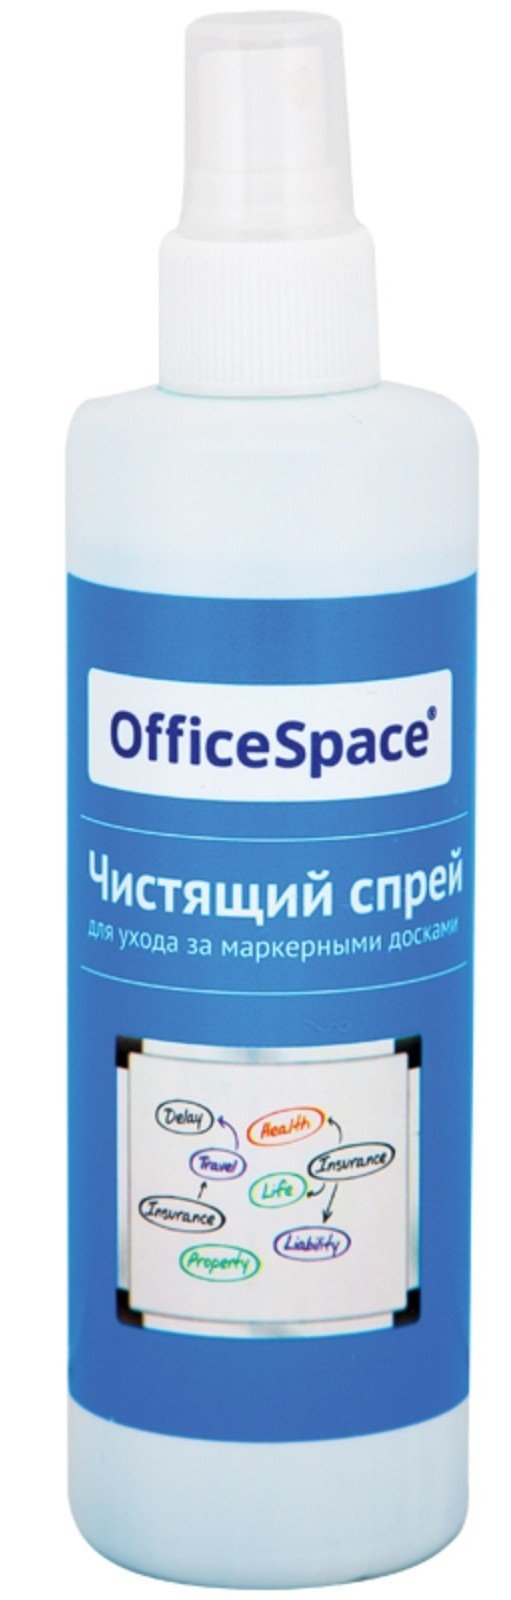 Чистящий спрей для маркерных досок OfficeSpace 250мл